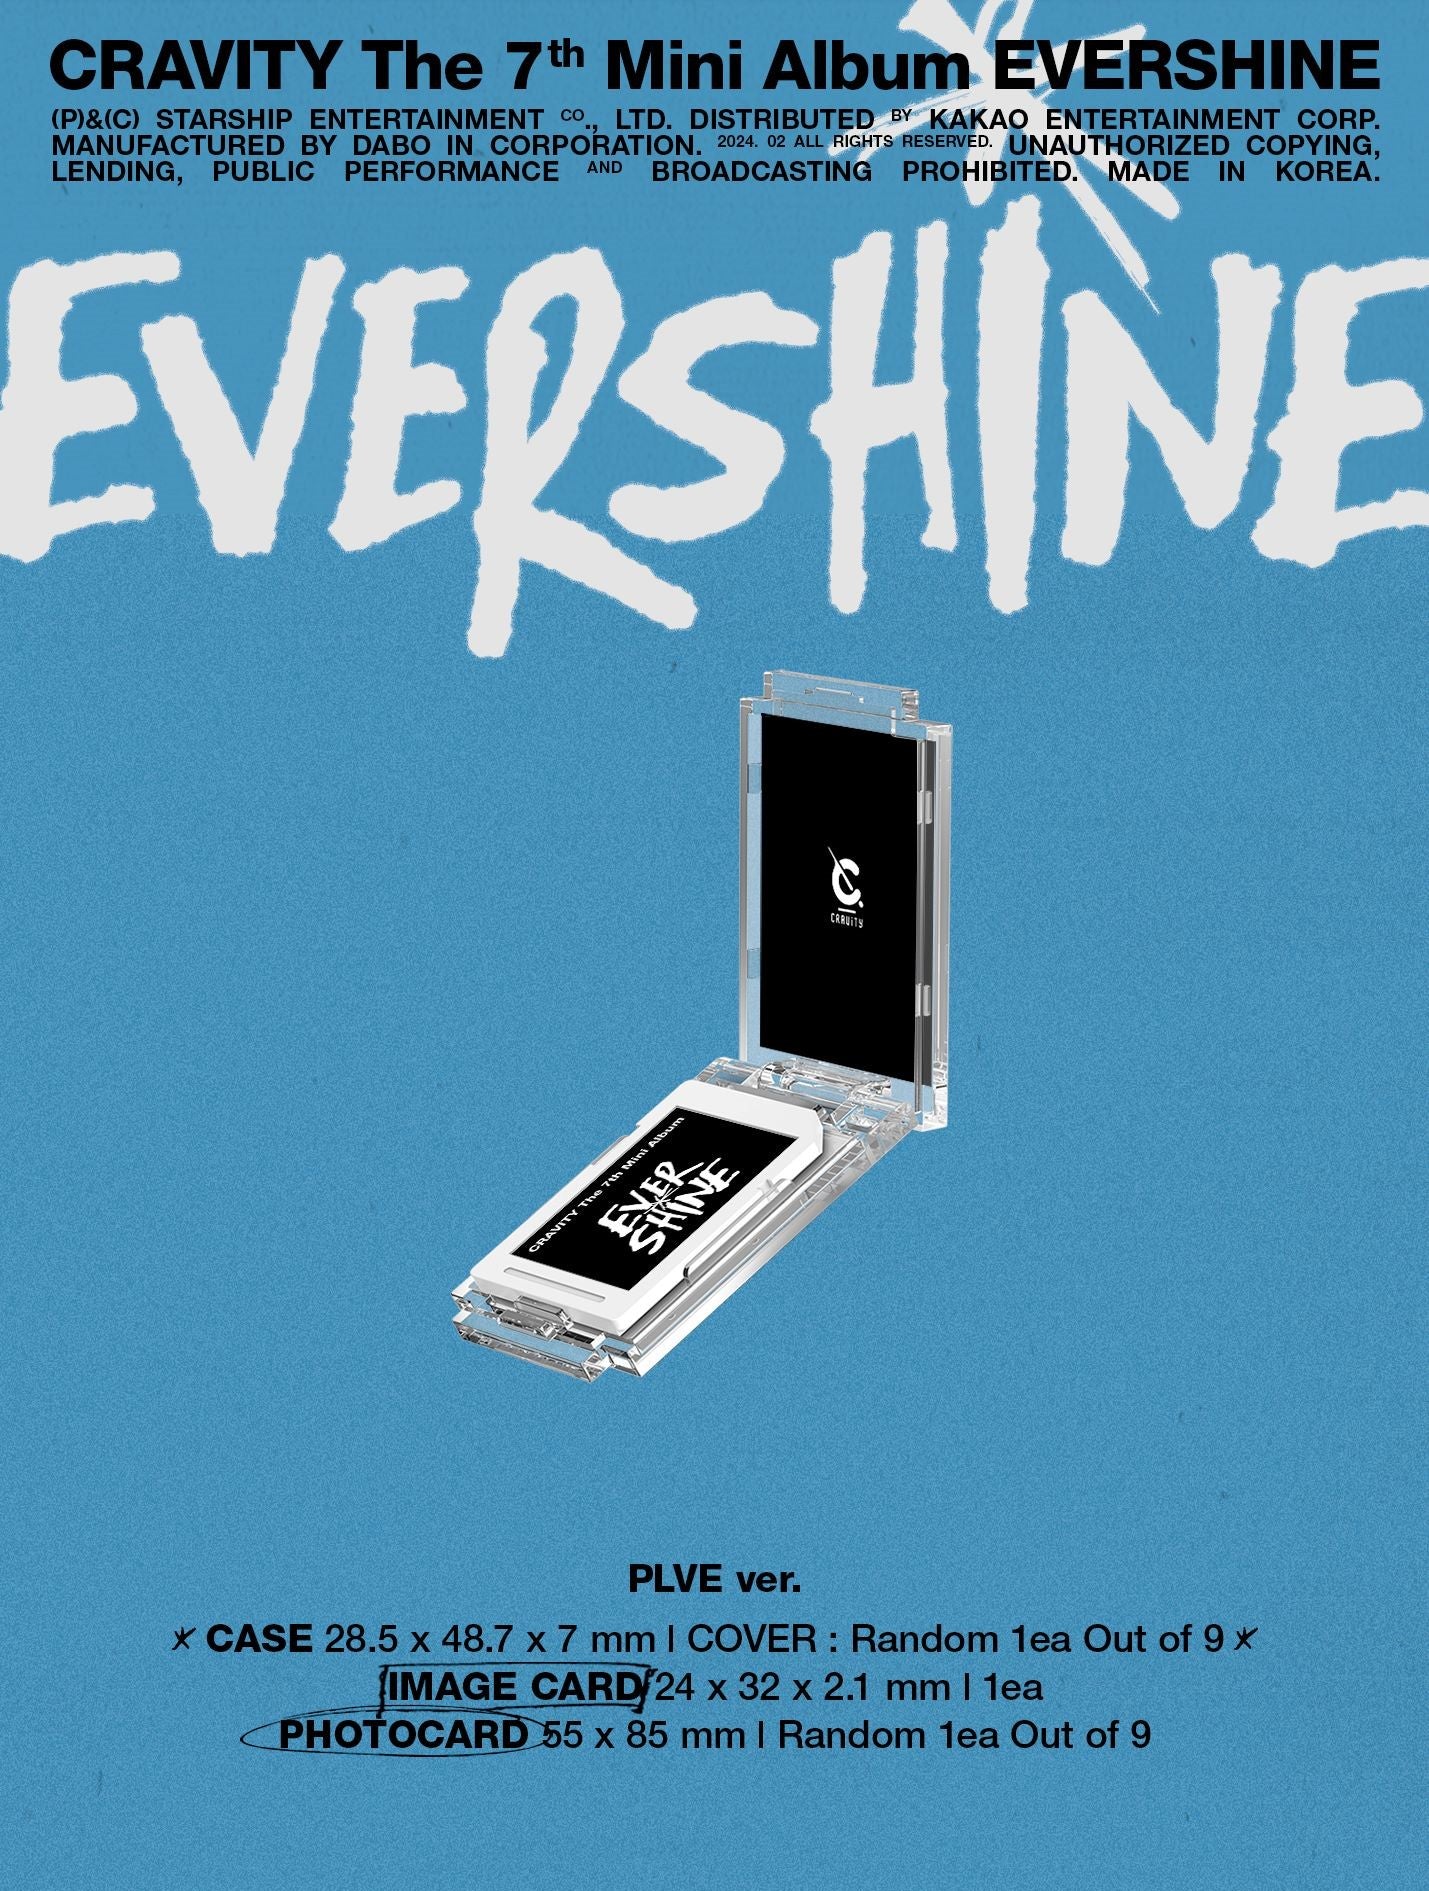 CRAVITY 7th Mini Album EVERSHINE - PLVE Version